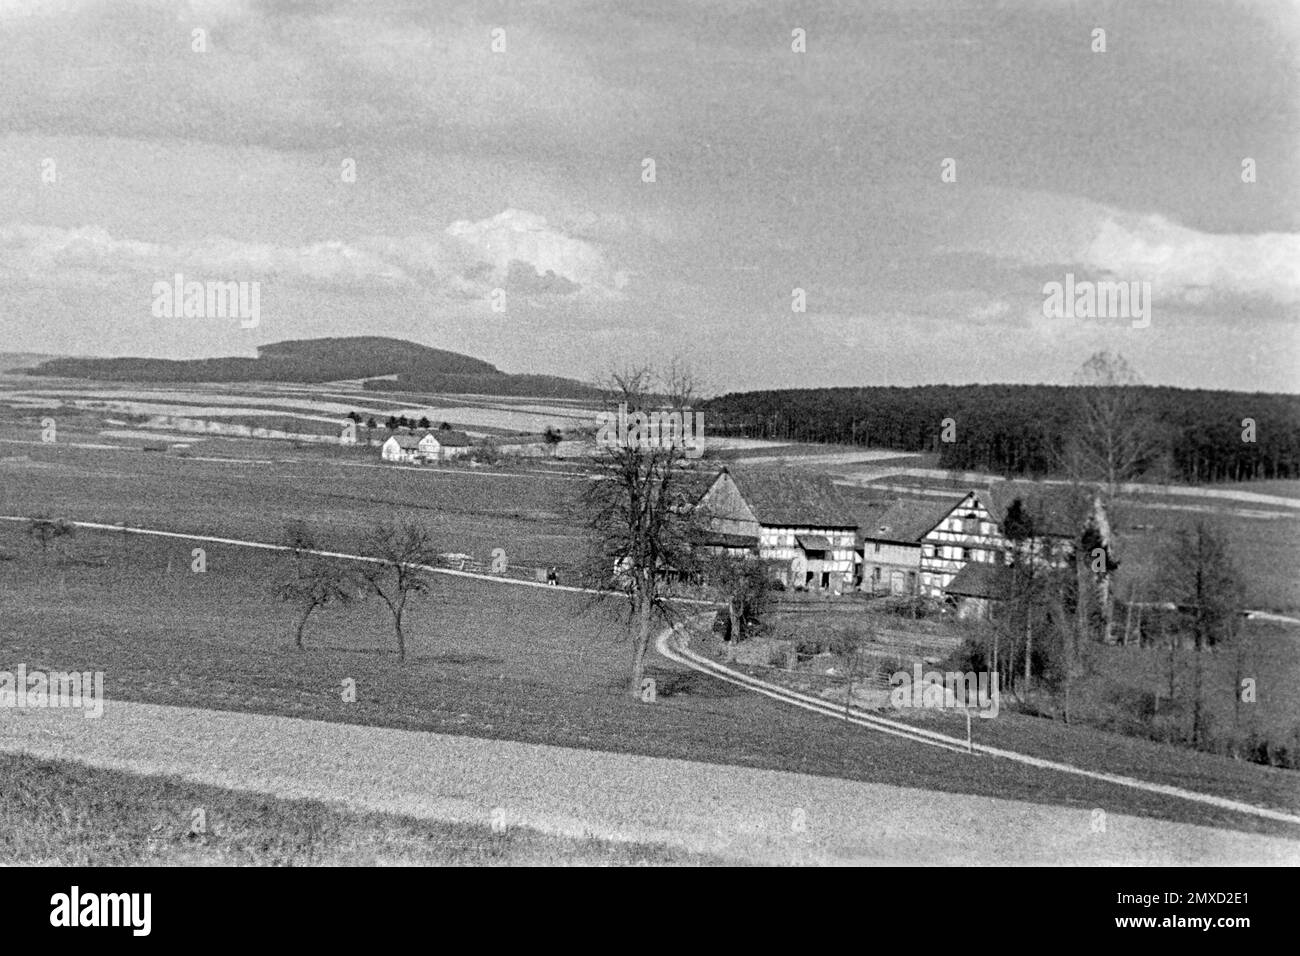 Fühlingslandschaft im Schwalm-Eder-Kreis in Hessen, 1938. Paysage de printemps dans la région de Schwalm-Eder à Hesse, 1938. Banque D'Images